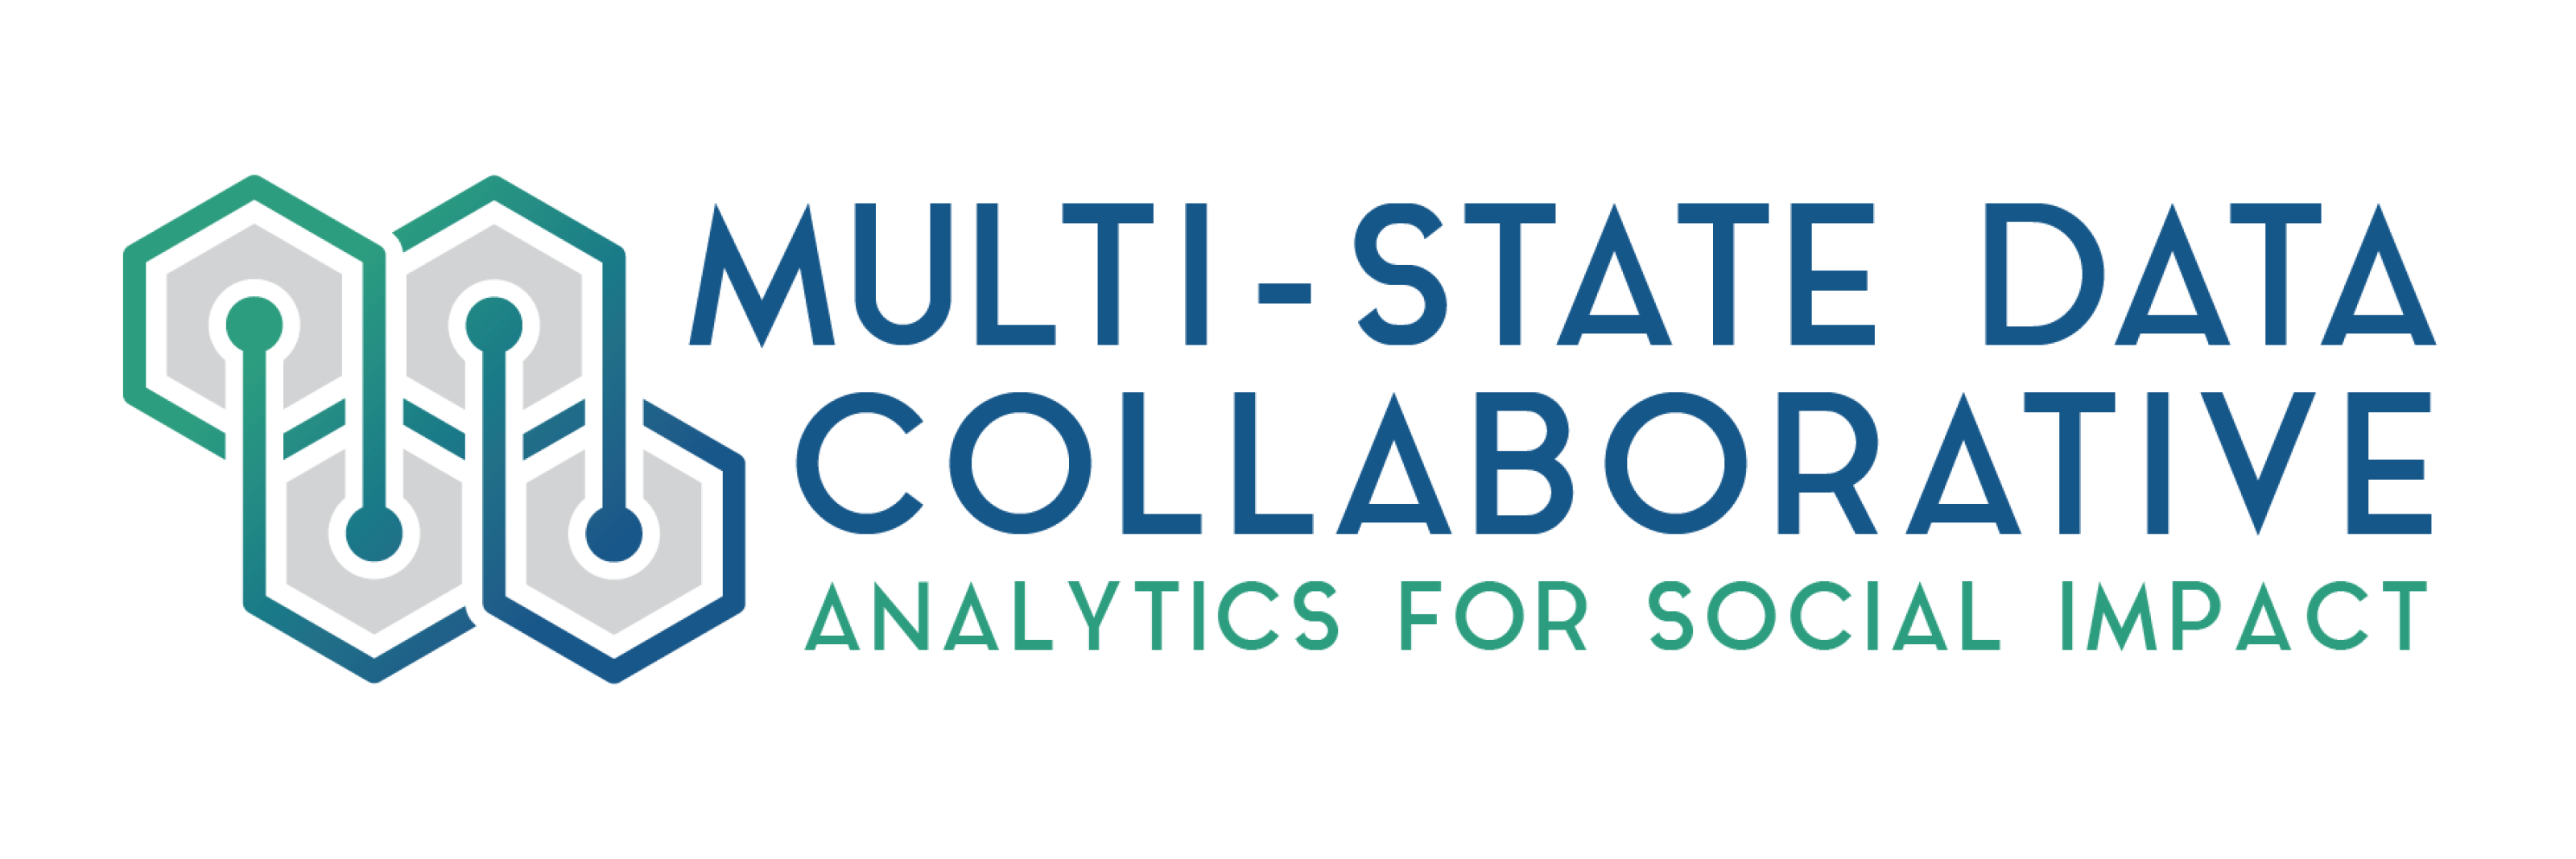 Multi-State Data Collaborative